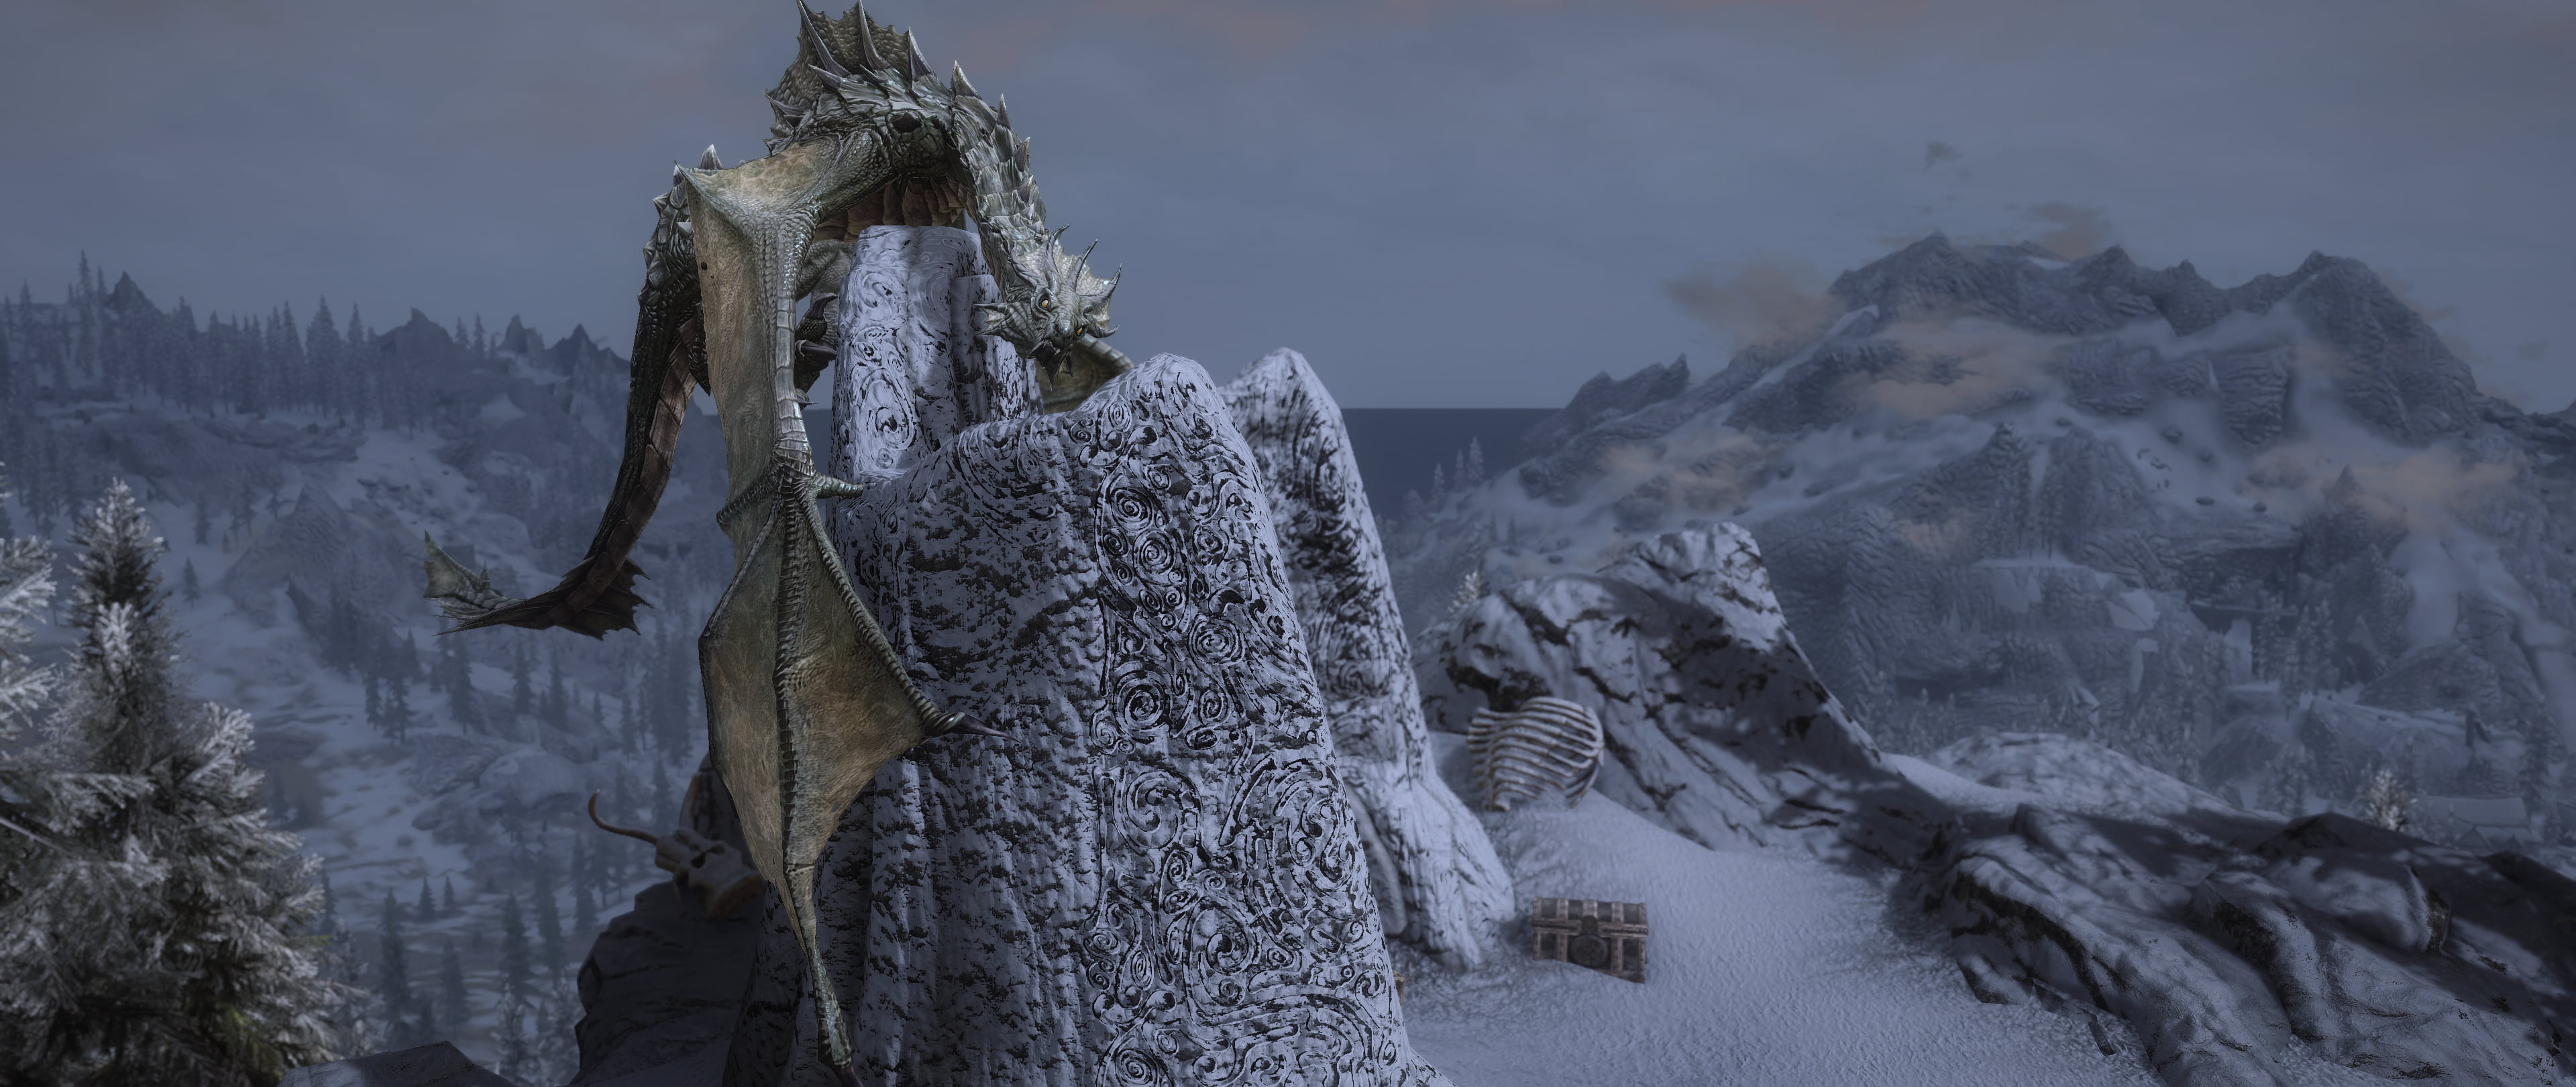 The Elder Scrolls V: Skyrim, video games, screen shot, RPG